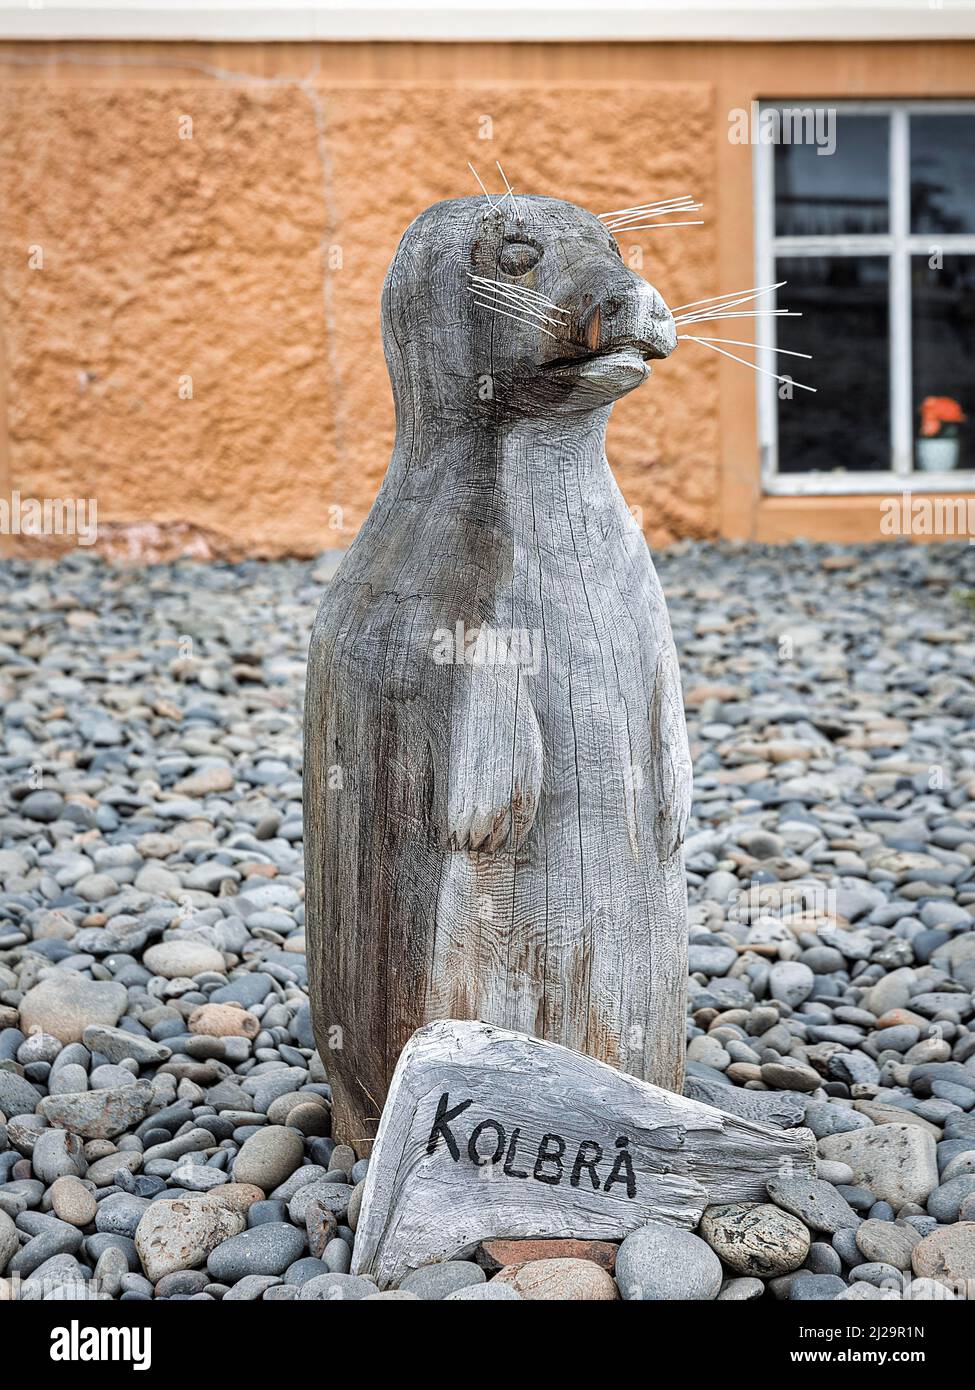 Stehende Dichtung, geschnitzt, Skulptur mit Schild Kolbra, Seal Center Hvammstangi, Vatnsnes Peninsula, Norourland vestra, Island Stockfoto